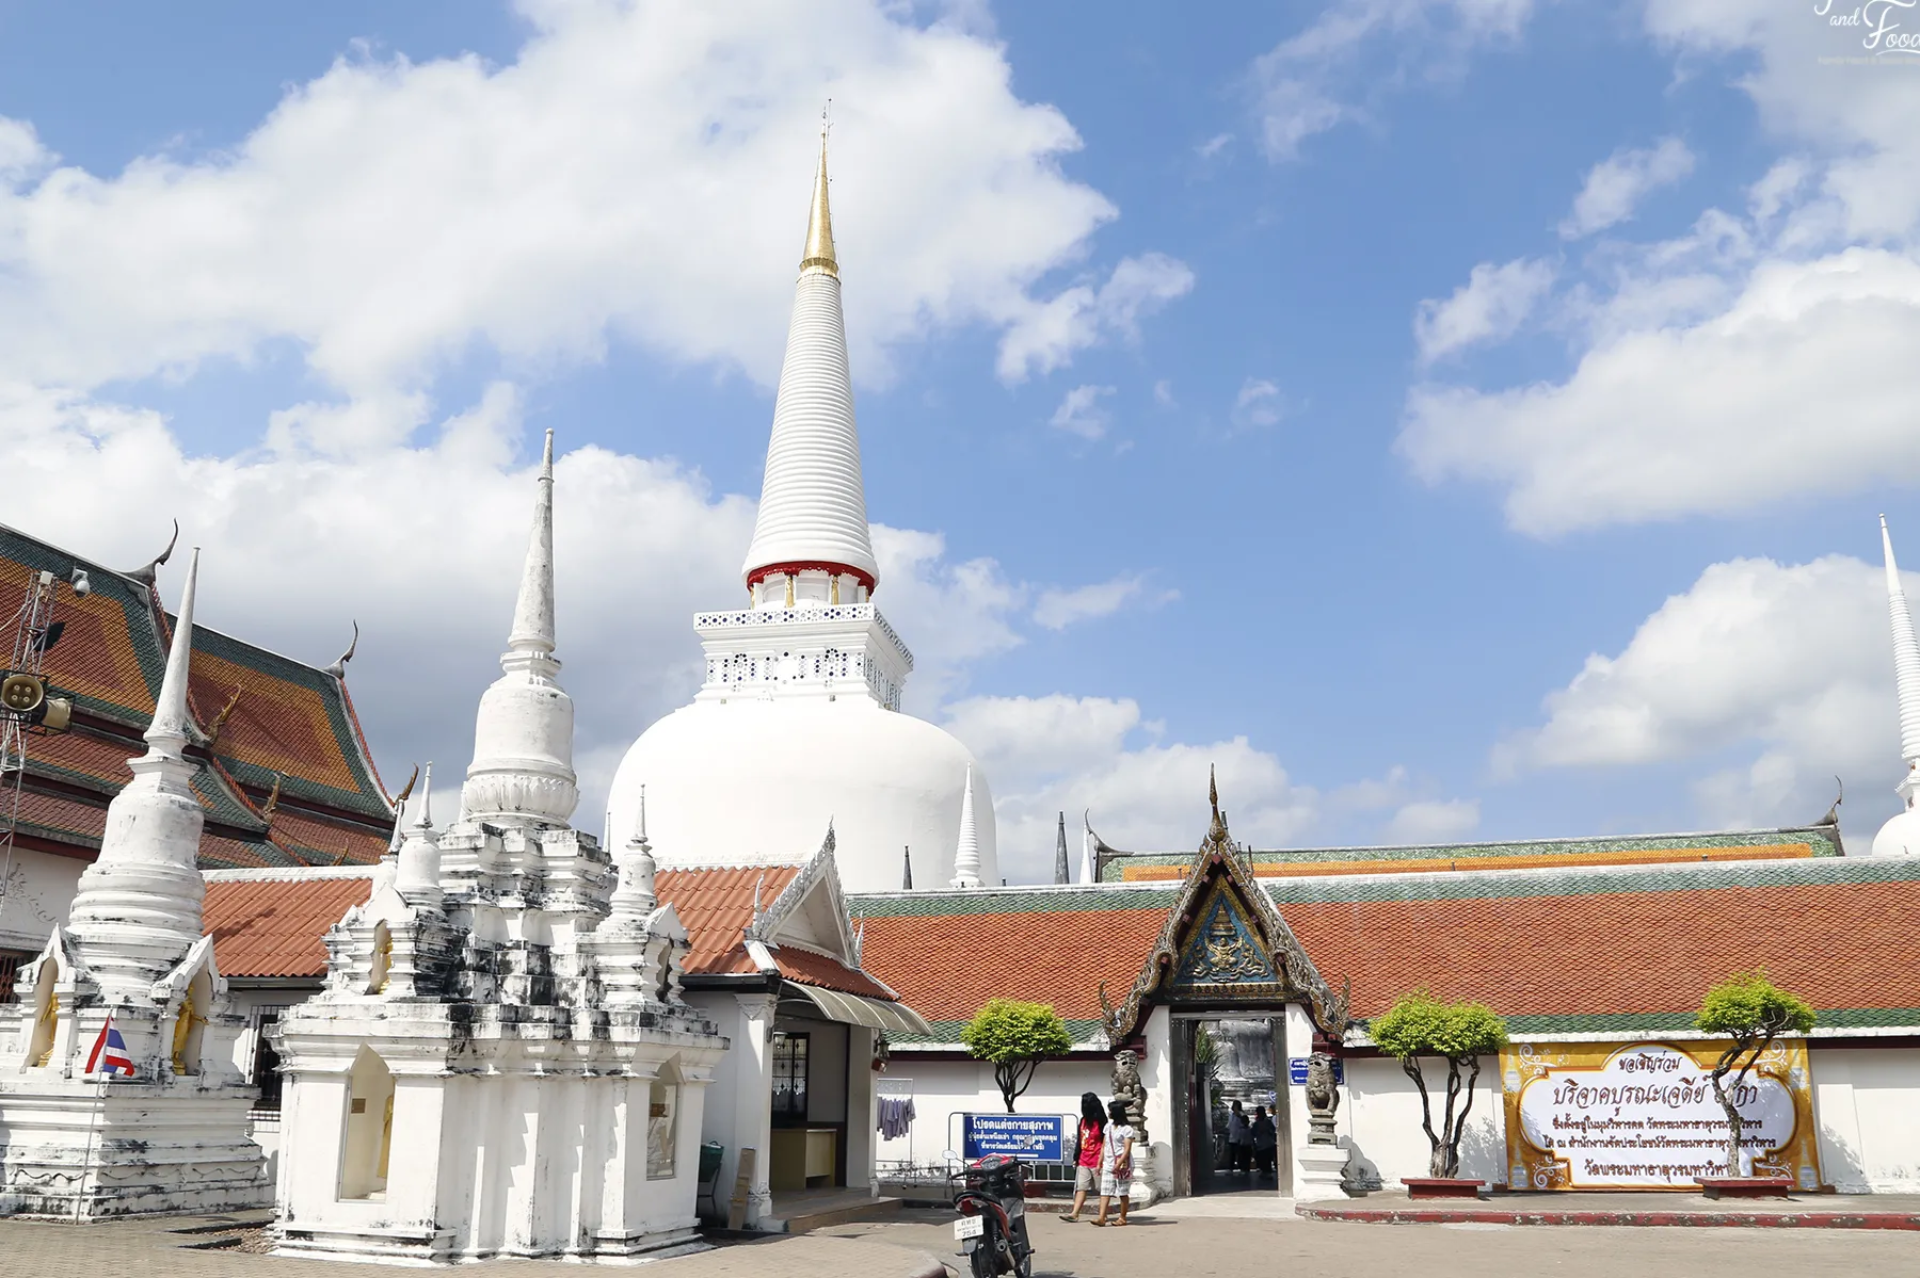 Phra Mahathat Woramaha Wiharn